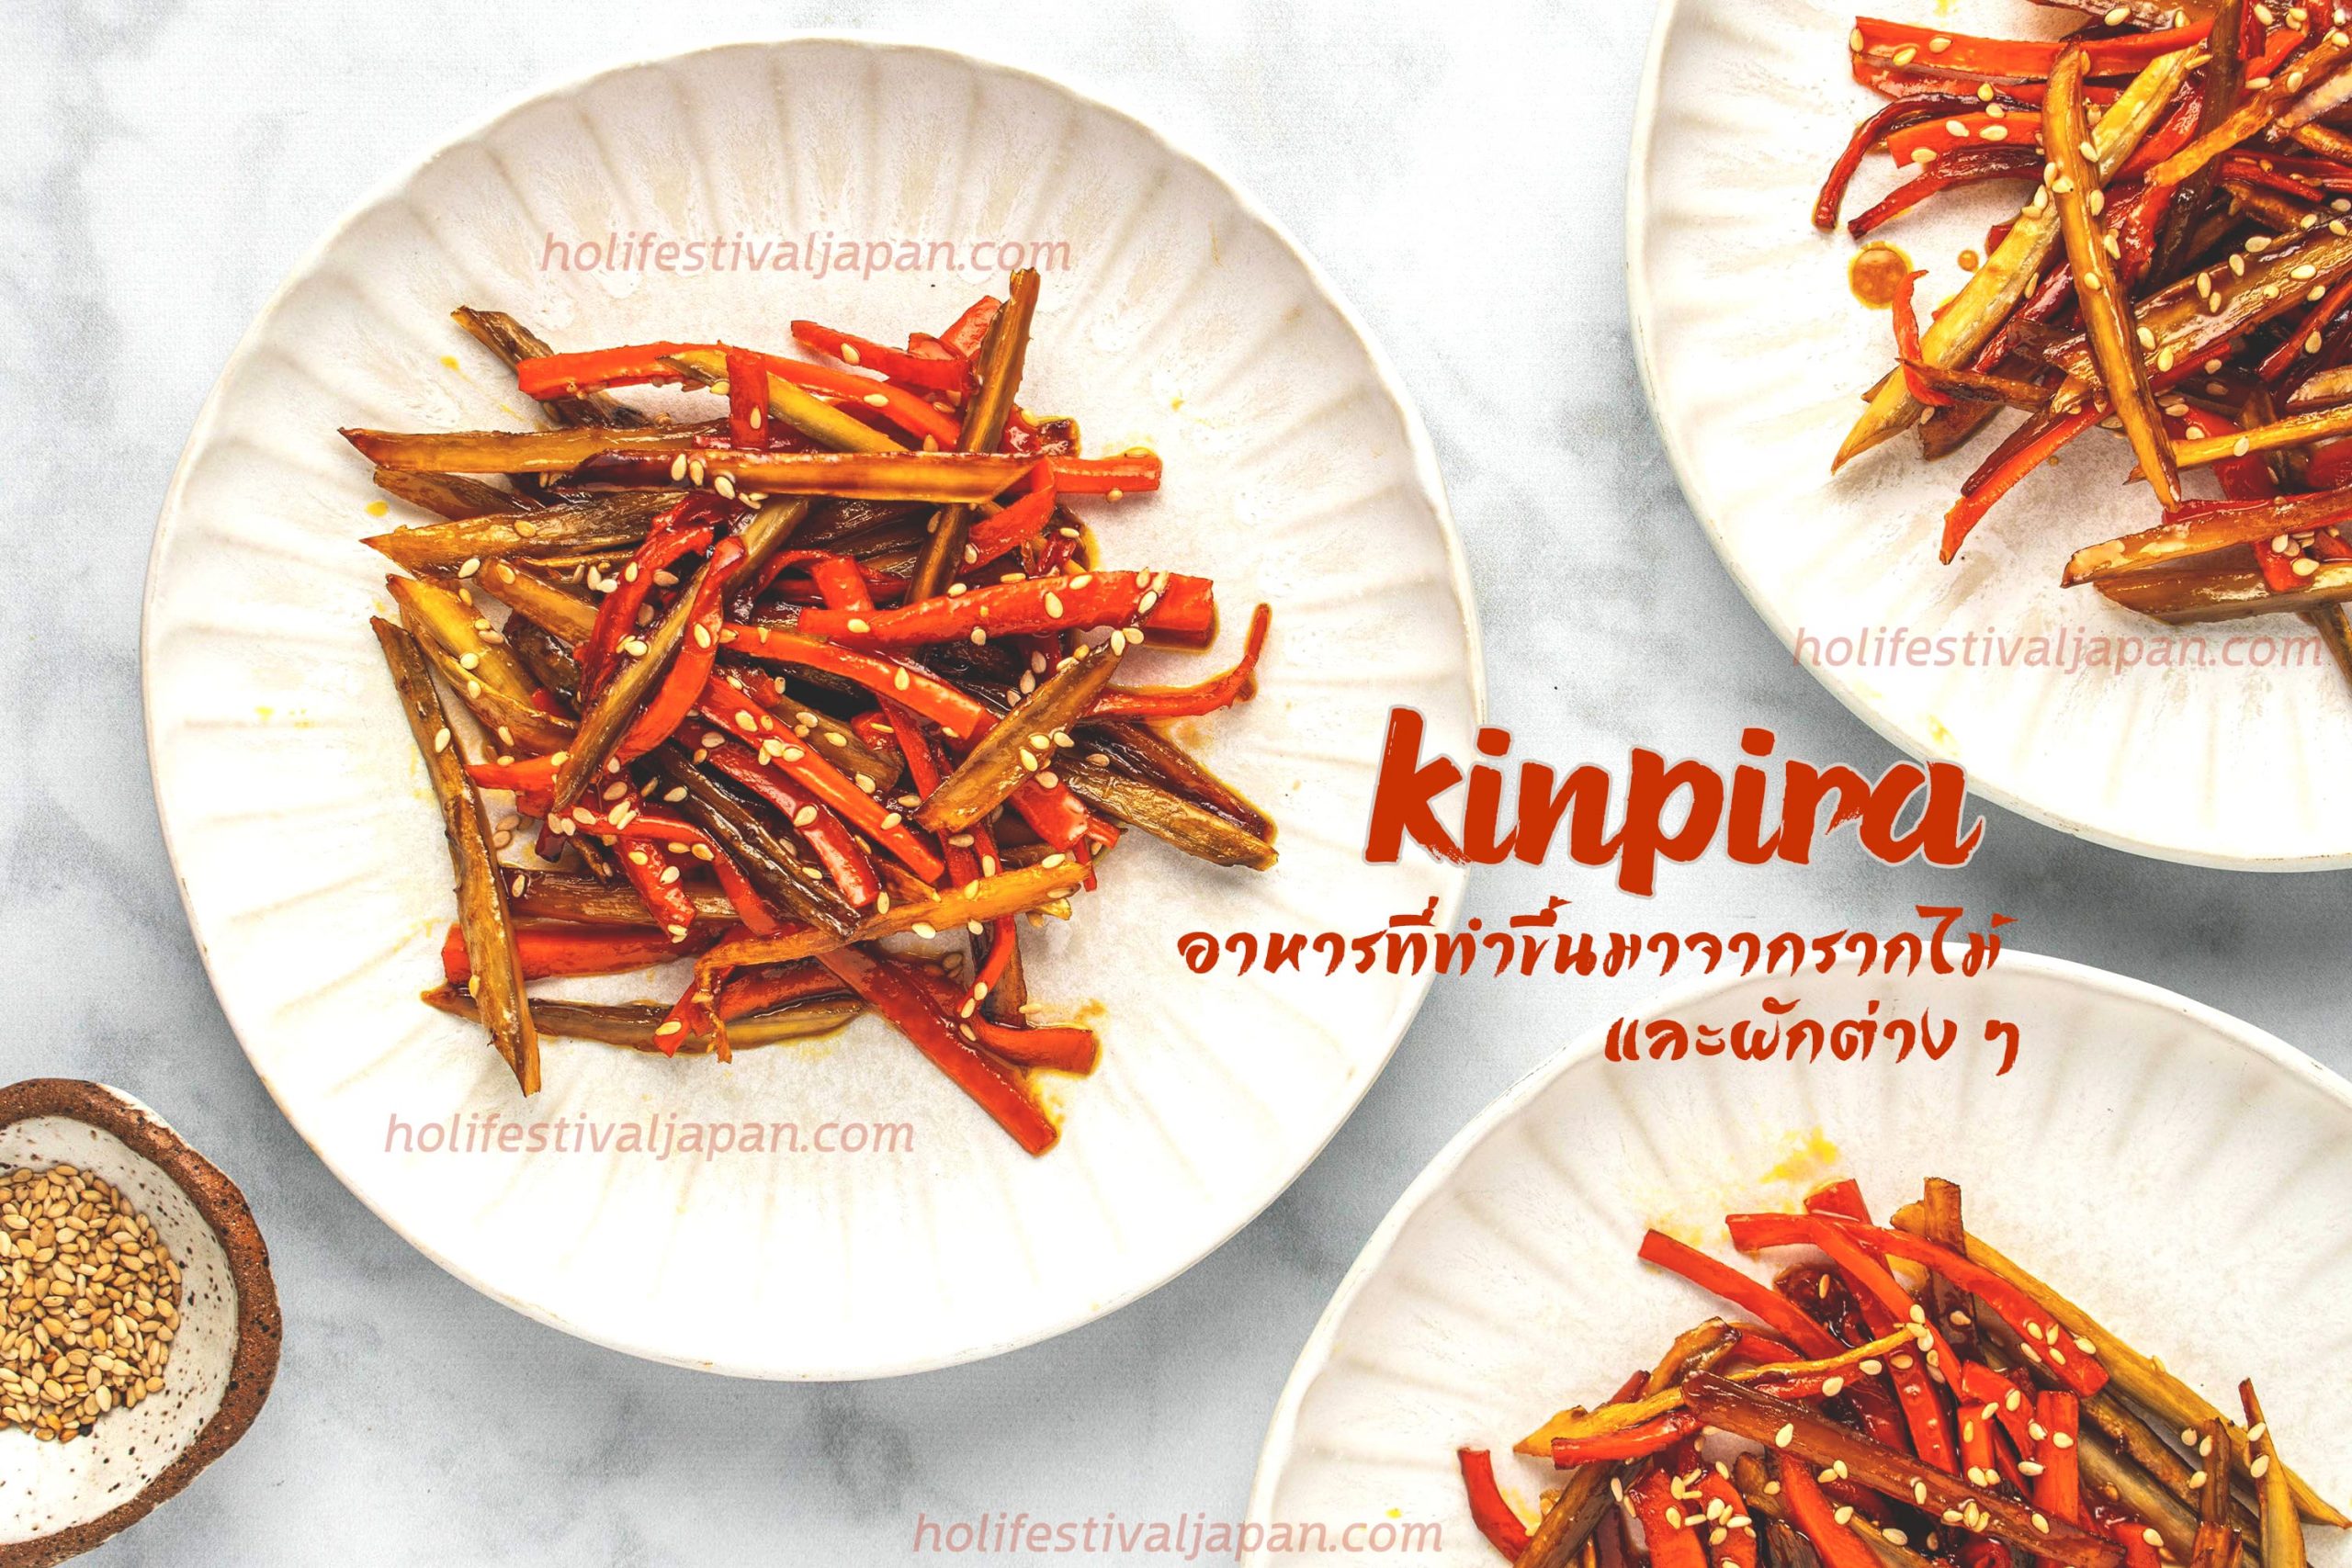 Kinpira อาหารที่ทำขึ้นมาจากรากไม้ และผักต่าง ๆ ที่มีสรรพคุณทางยา